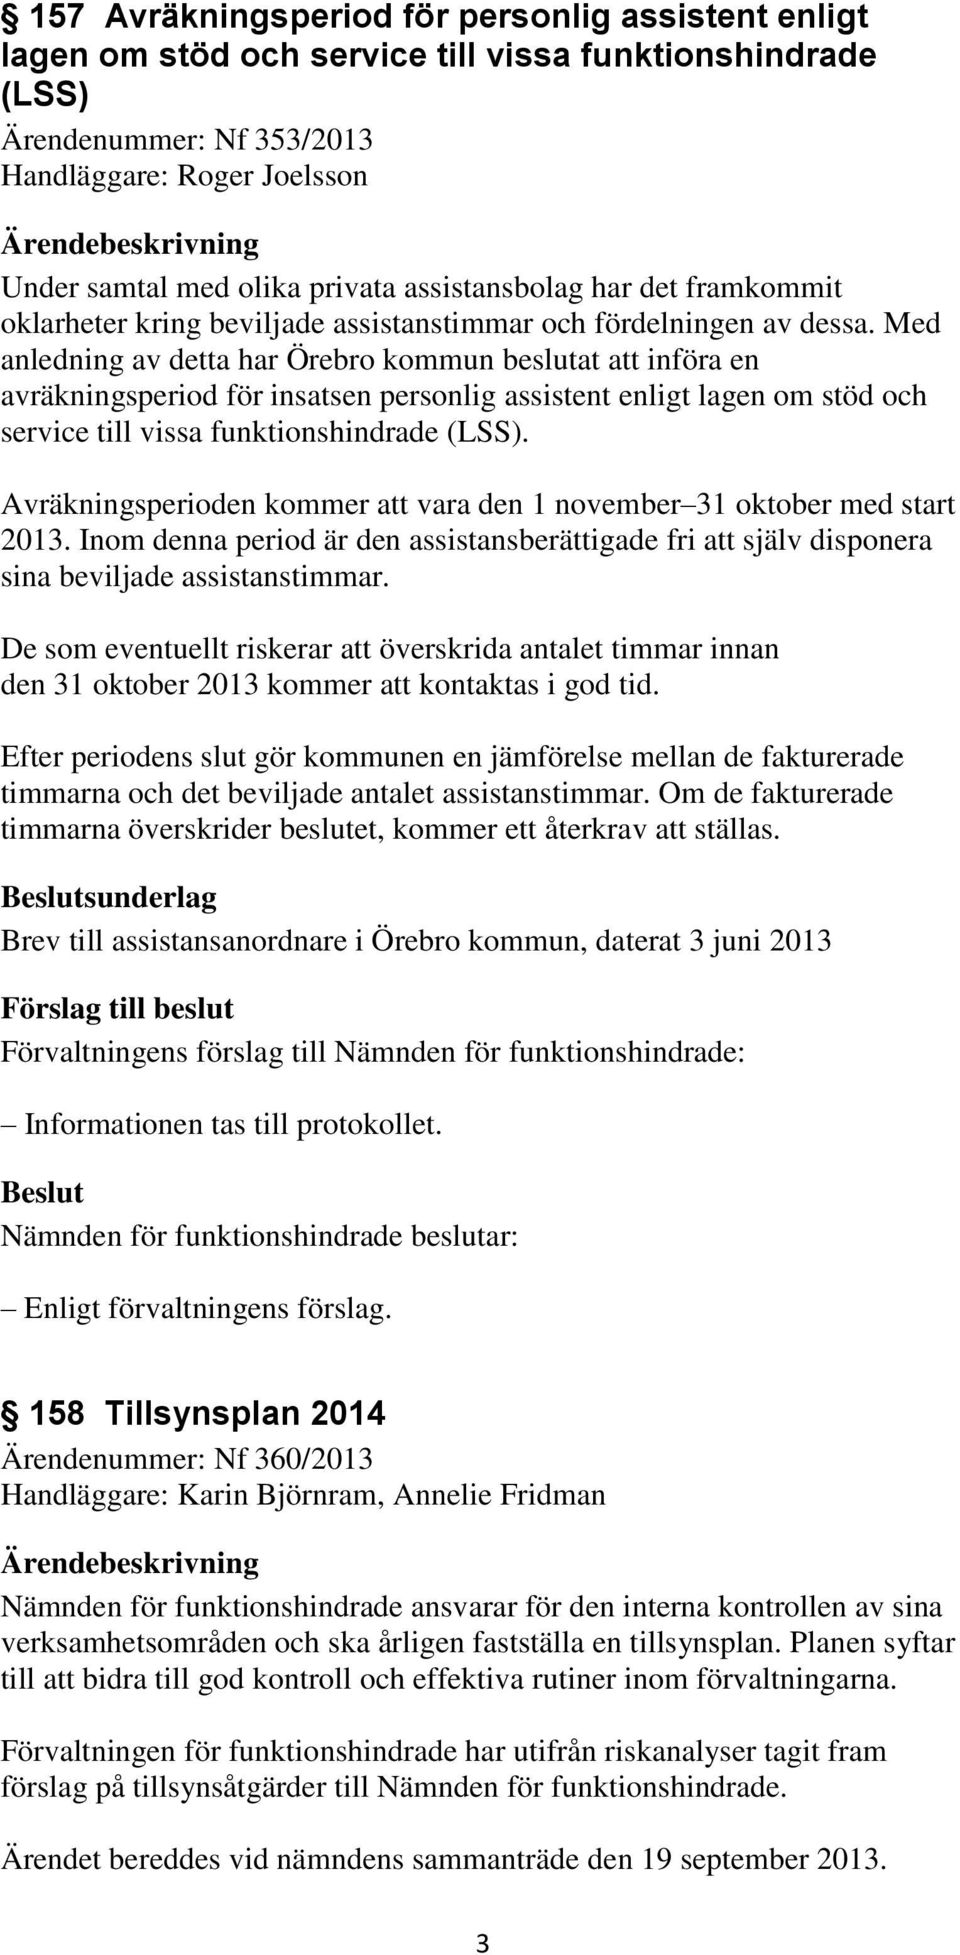 Med anledning av detta har Örebro kommun beslutat att införa en avräkningsperiod för insatsen personlig assistent enligt lagen om stöd och service till vissa funktionshindrade (LSS).